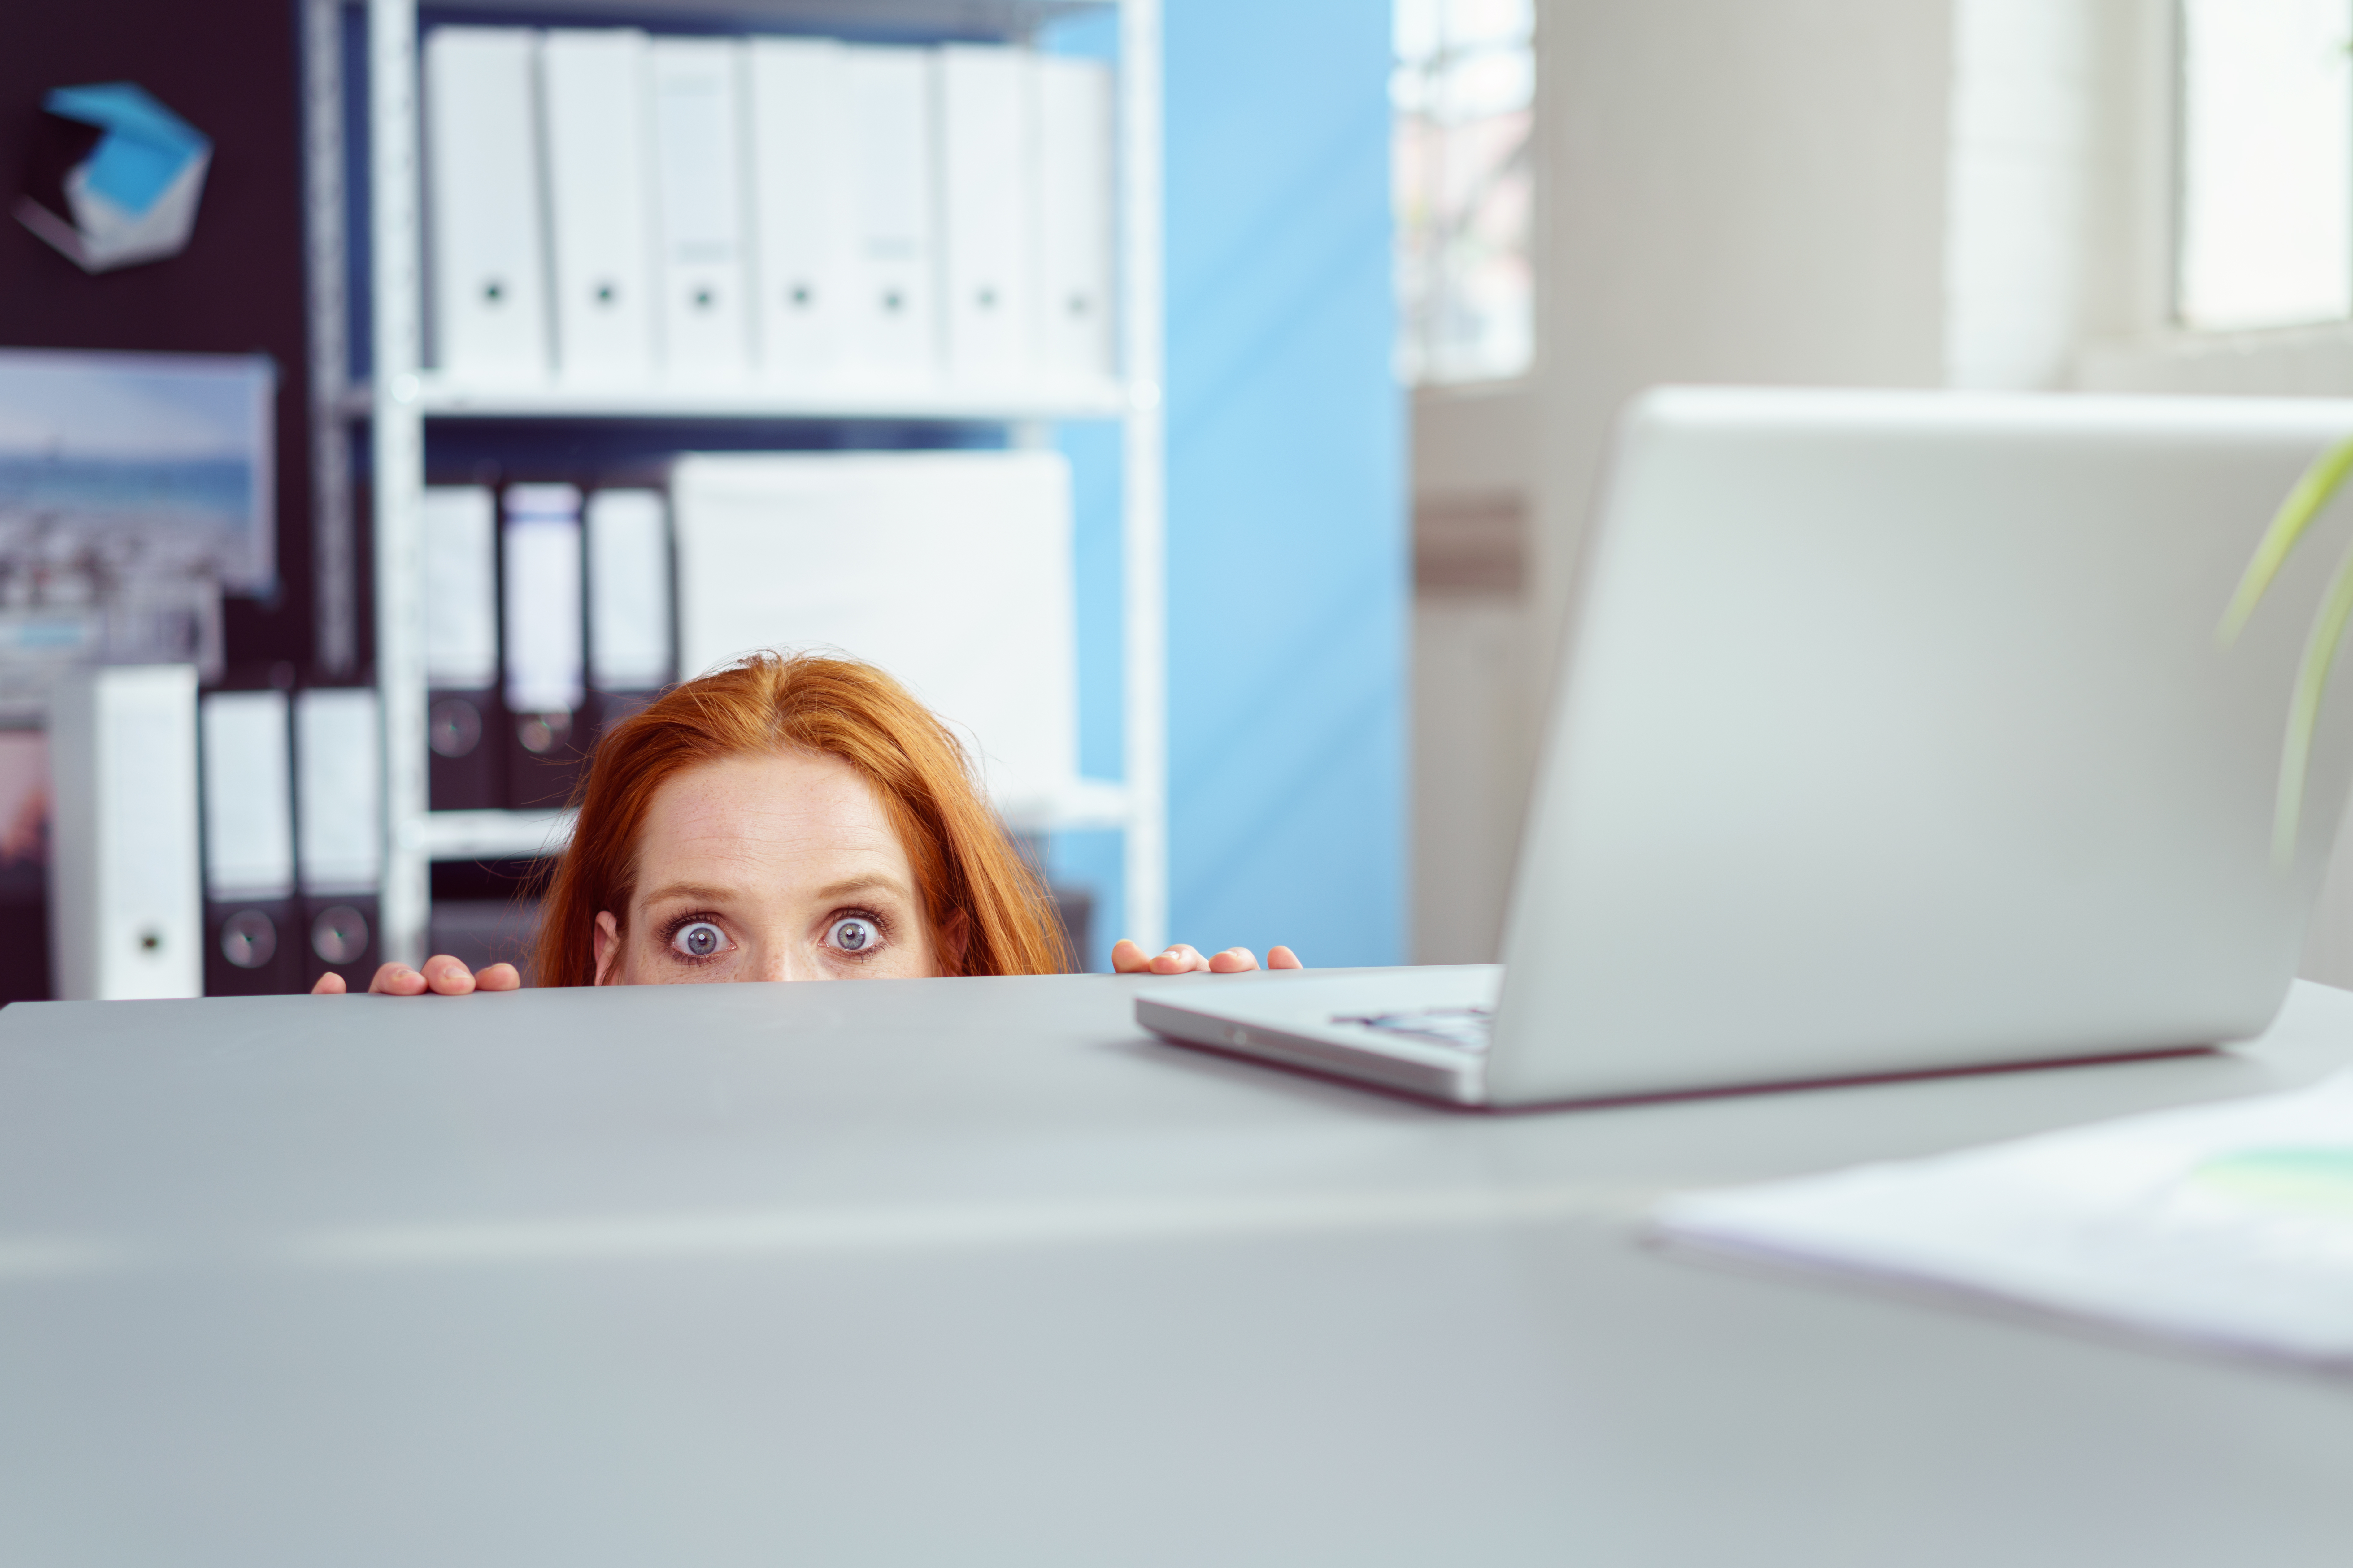 A woman hiding under a desk | Source: Shutterstock